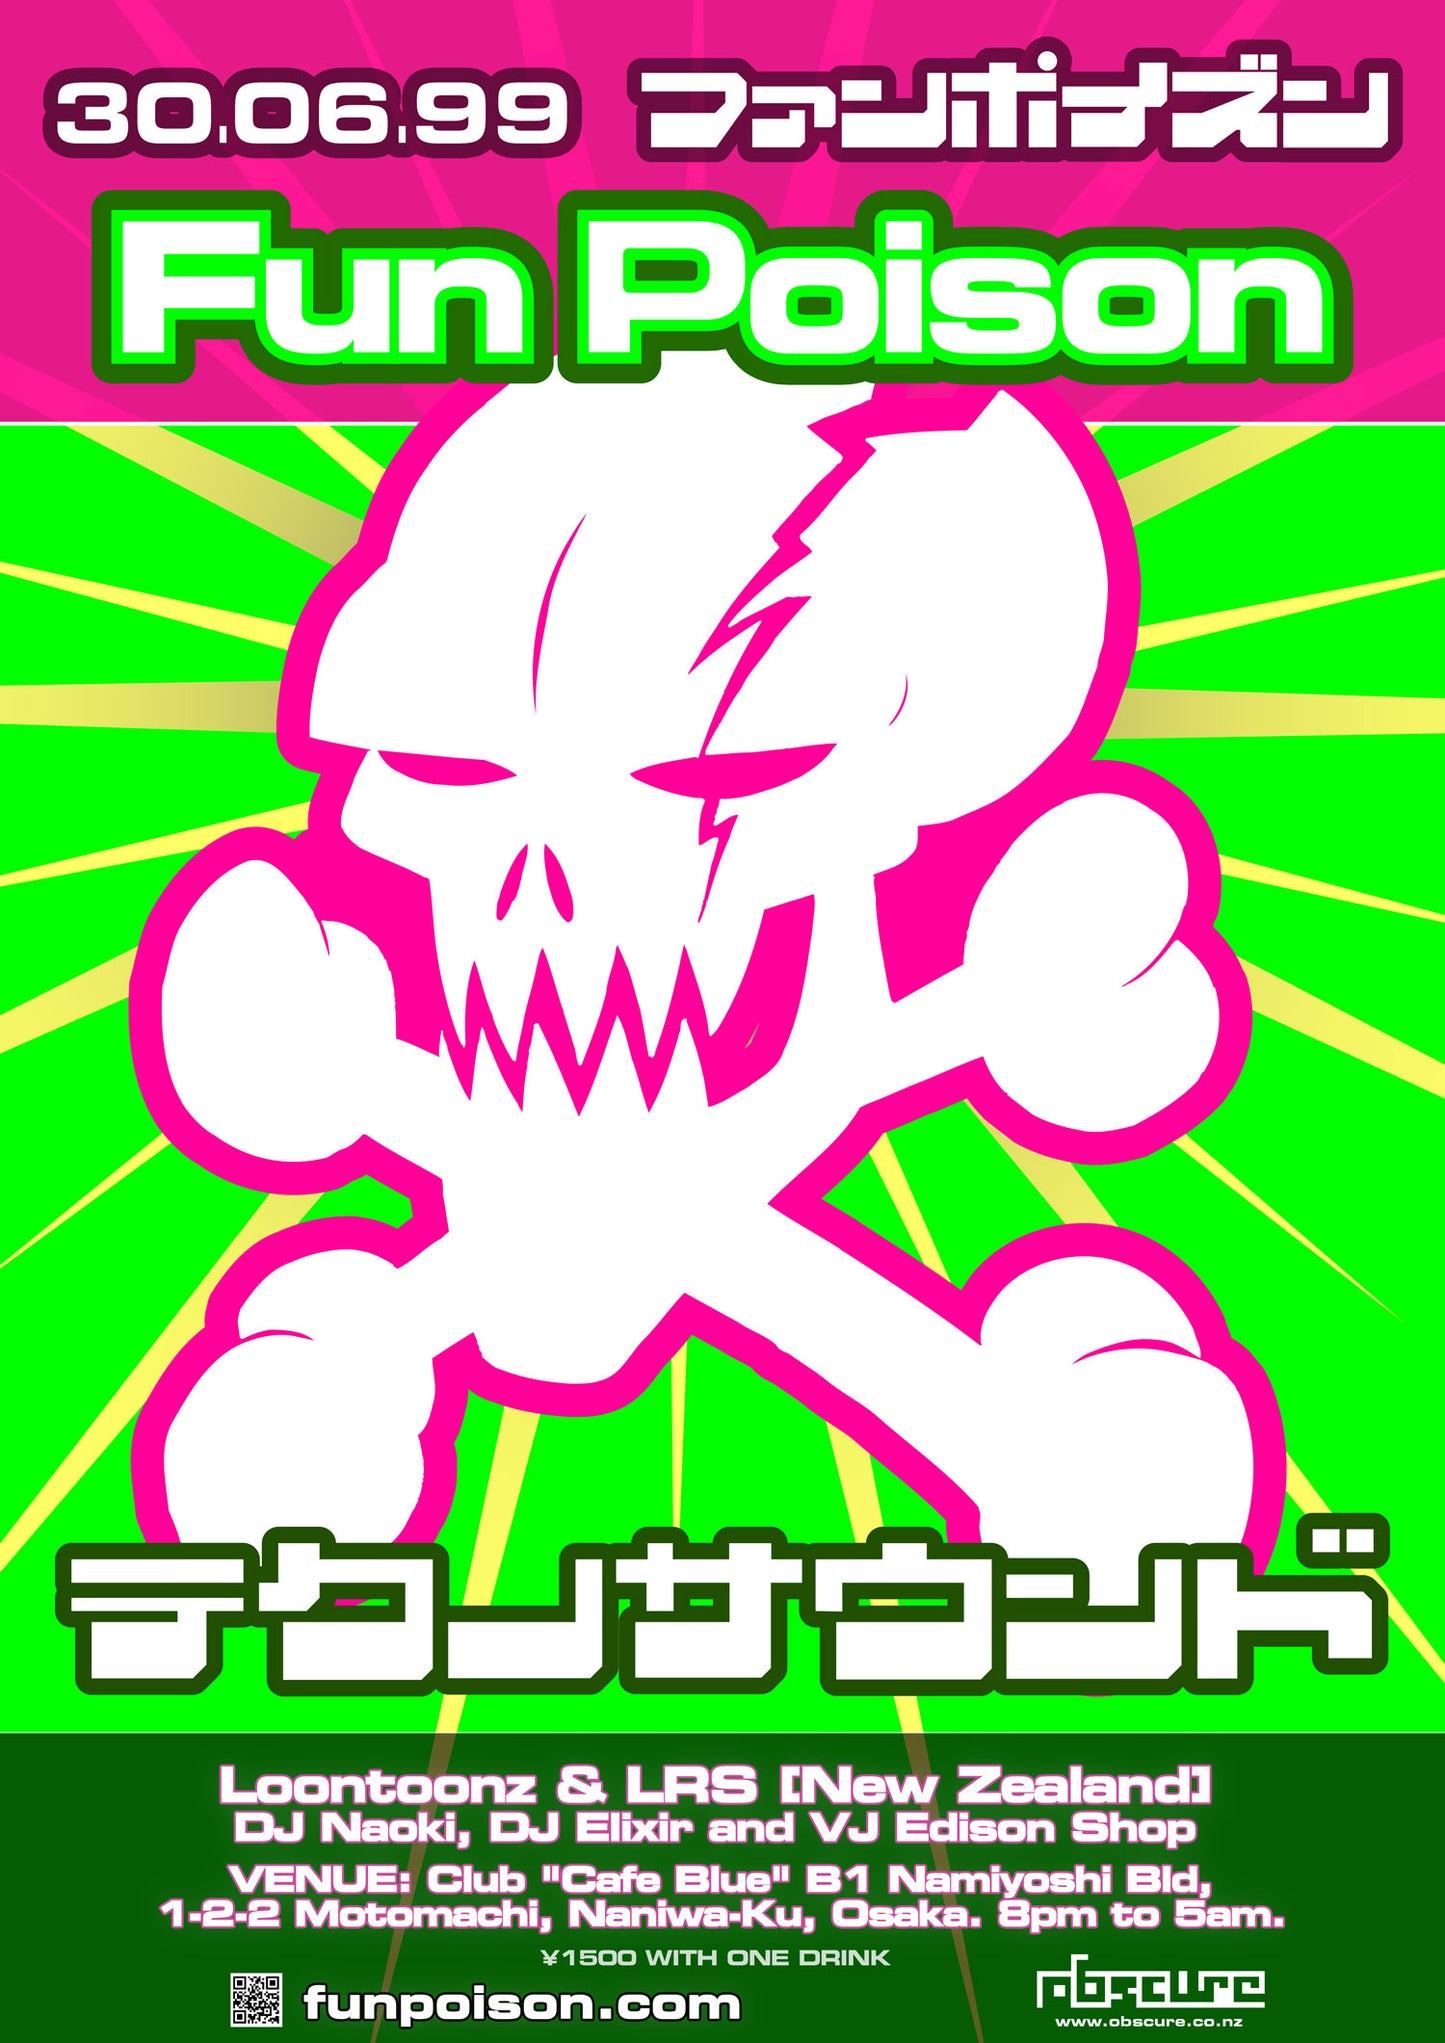 Fun Poison Poster Series